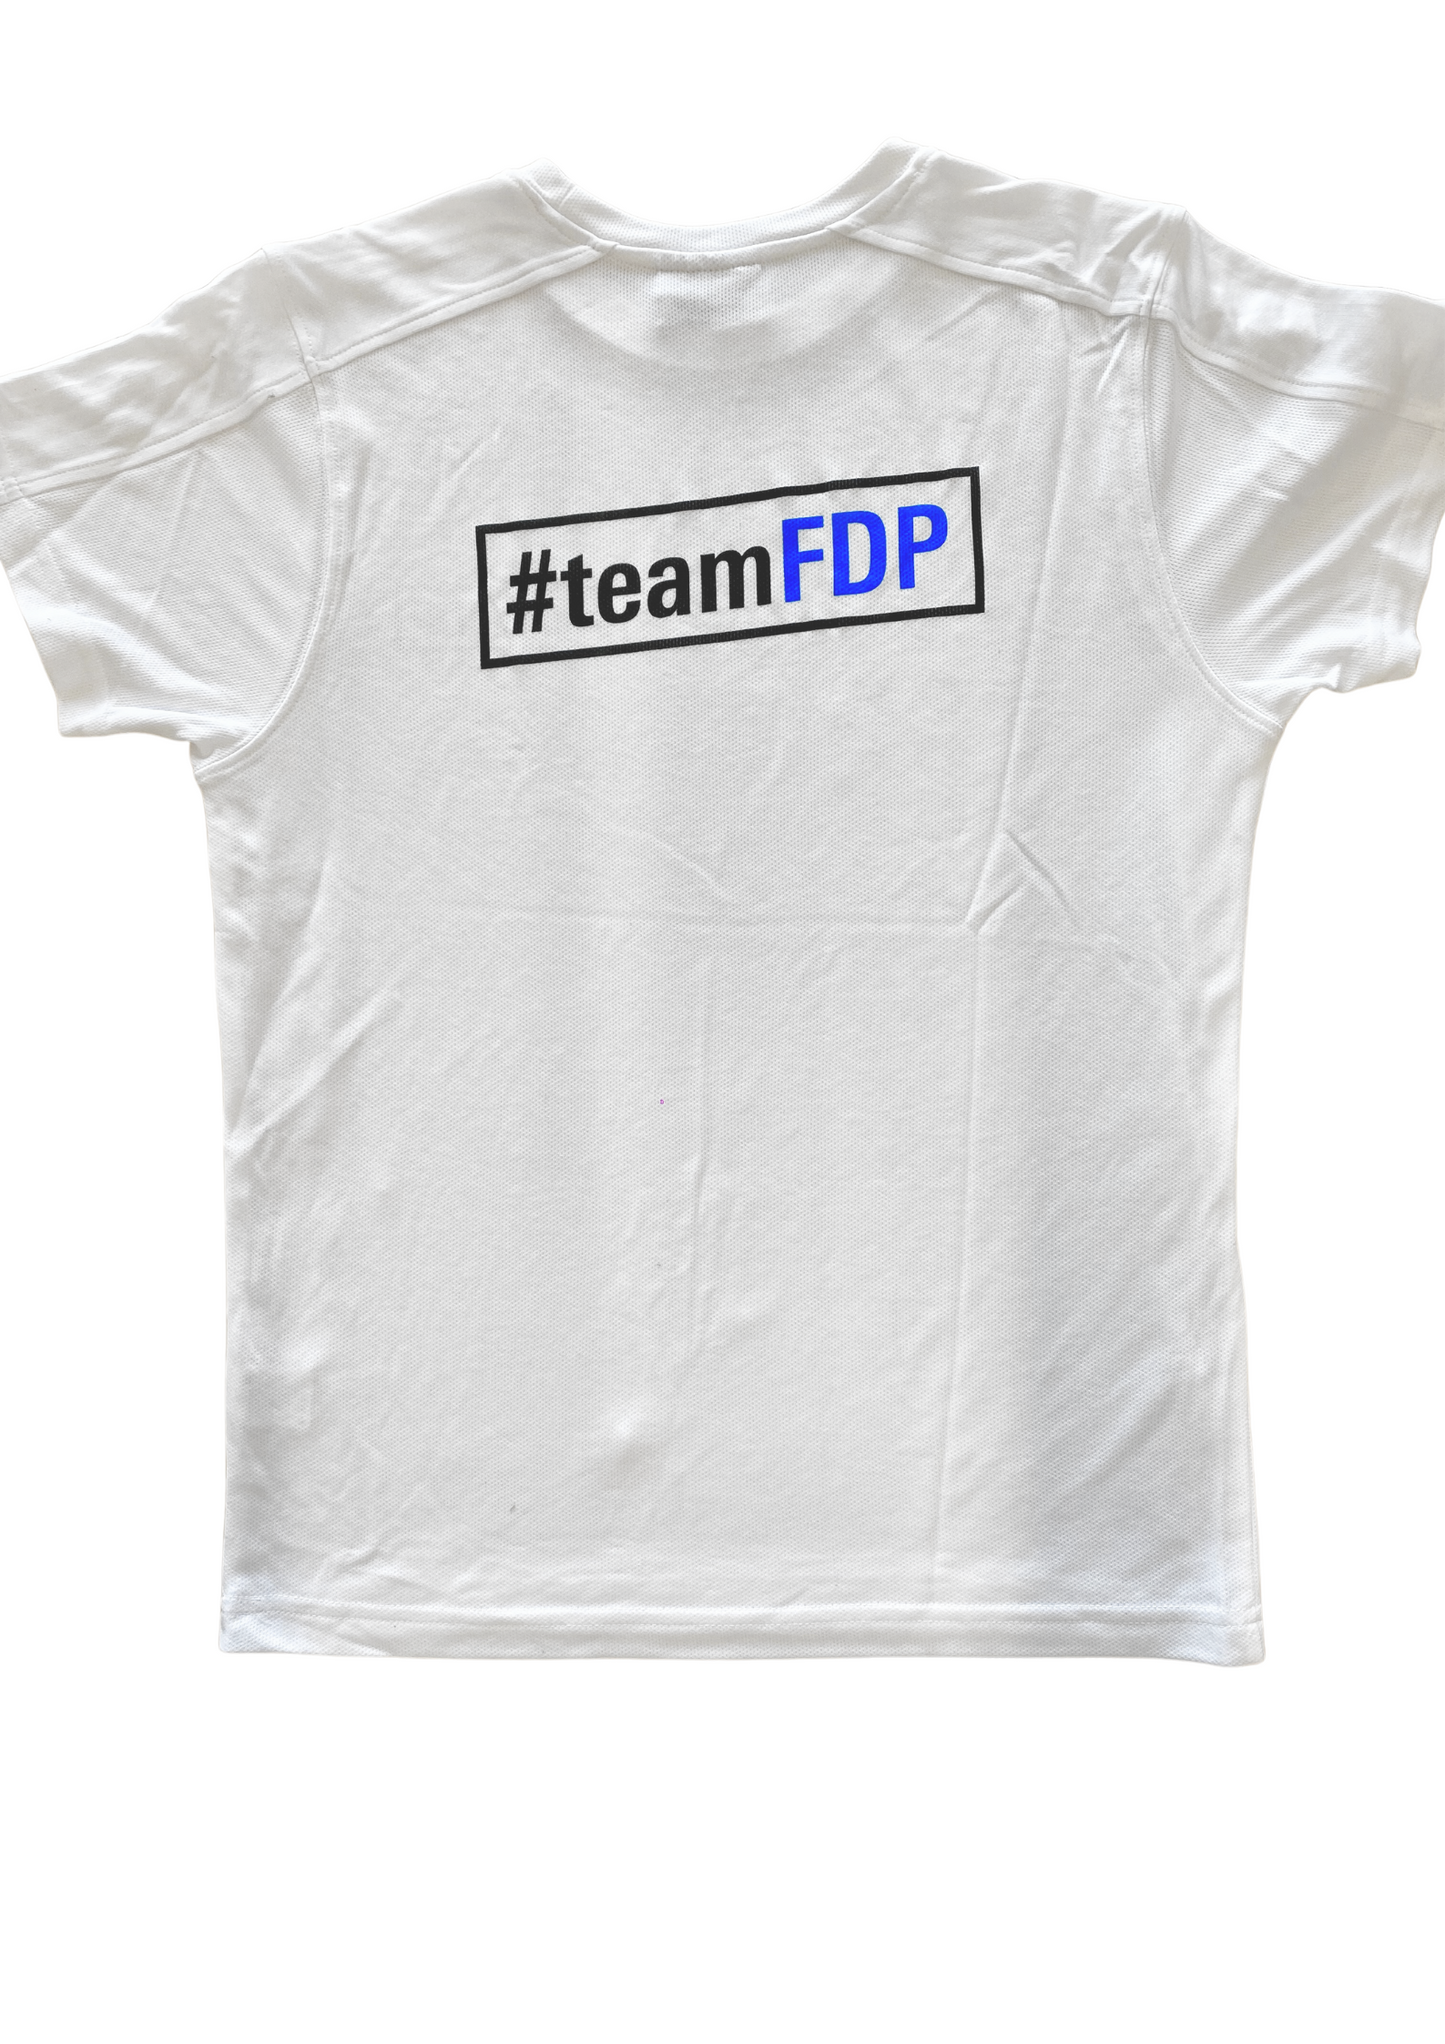 T-Shirt #teamPLR